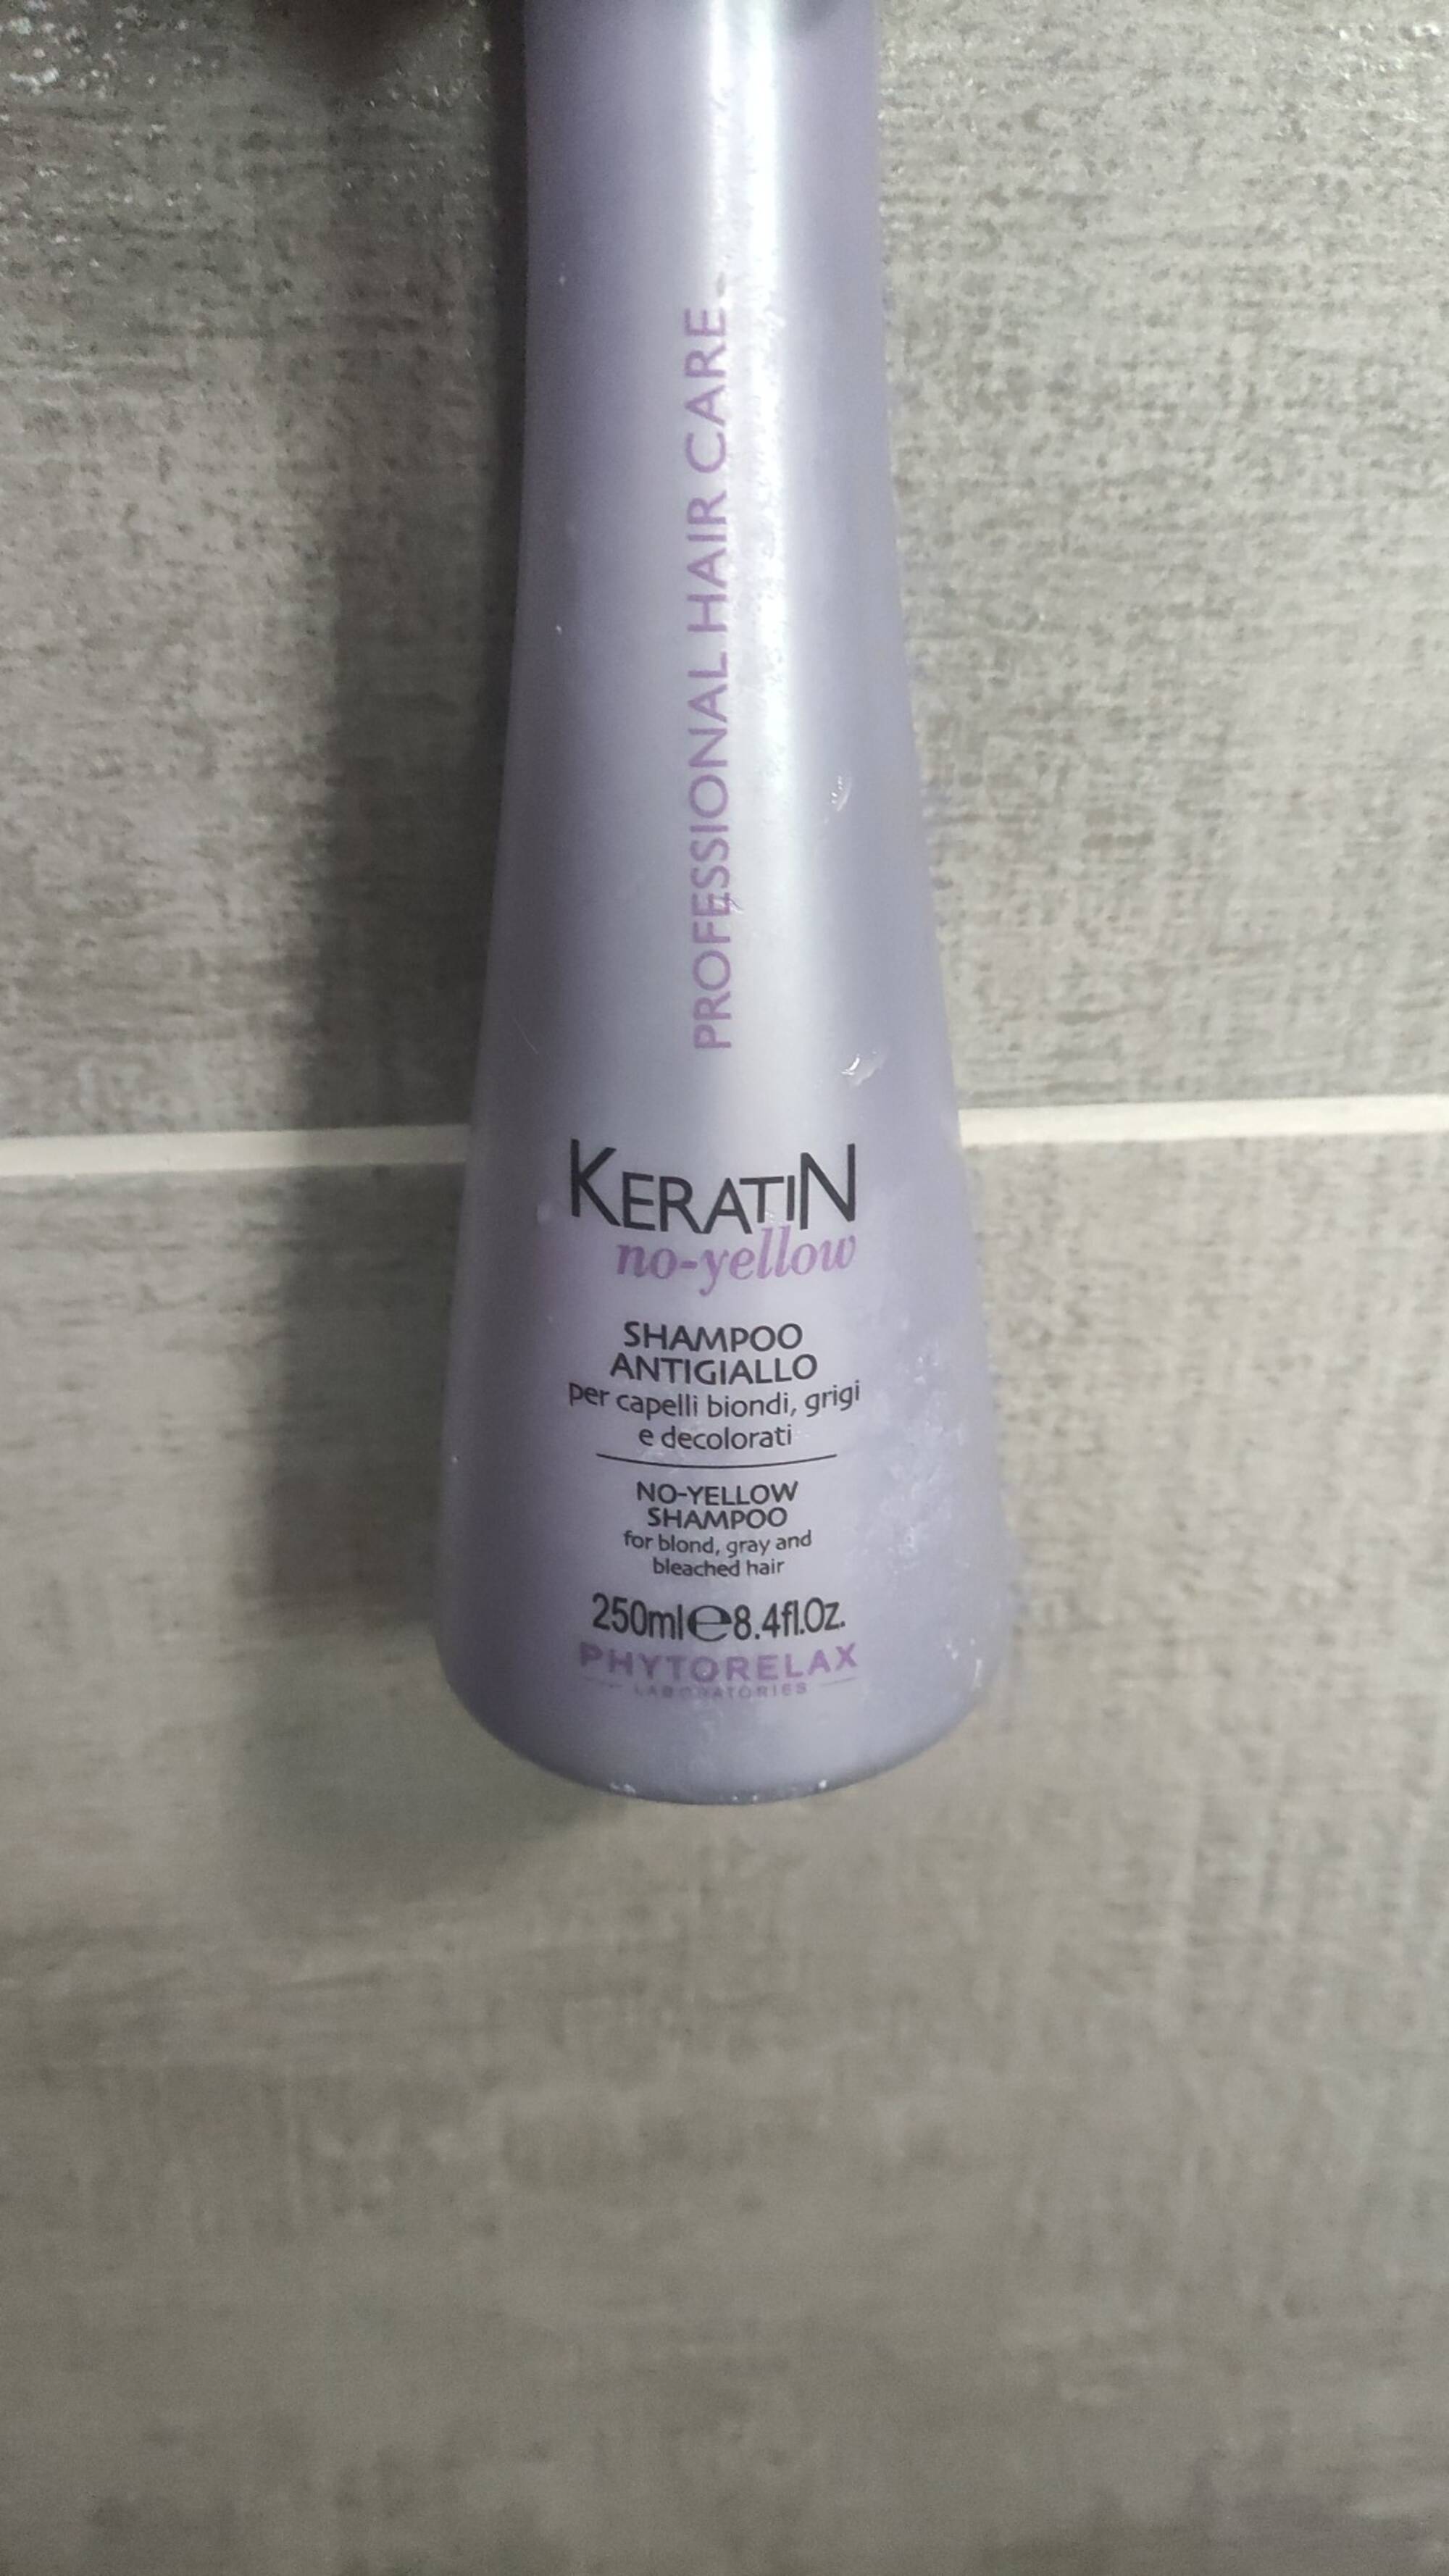 PHYTORELAX - Keratin no-yelow - Shampoo antigiallo